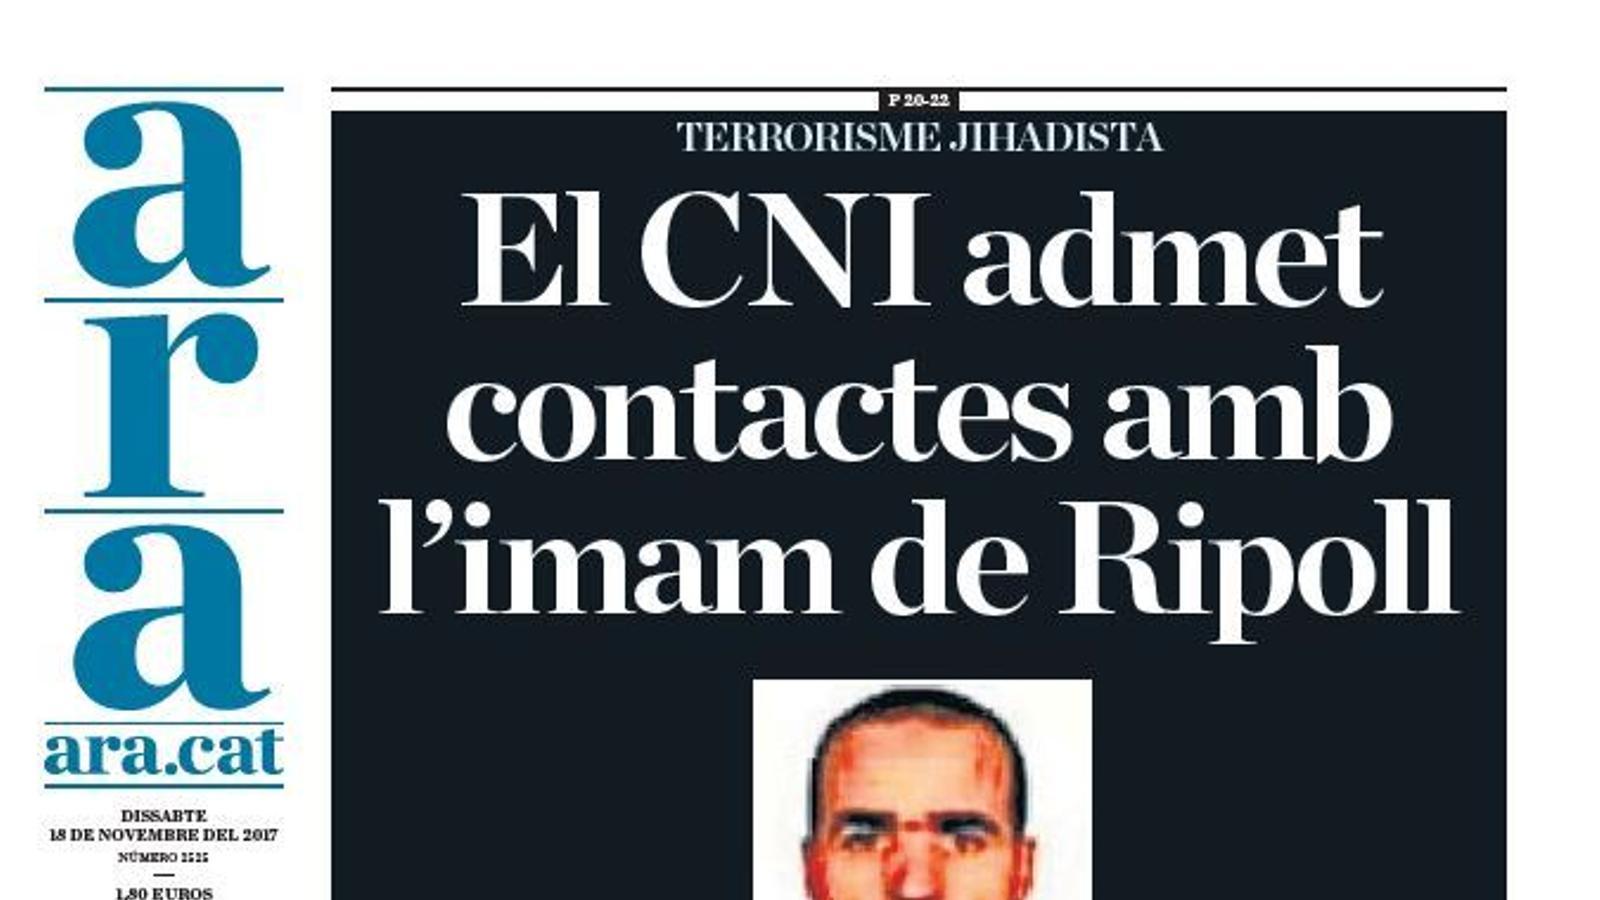 "El CNI admet contactes amb l'imam de Ripoll", portada de l'ARA